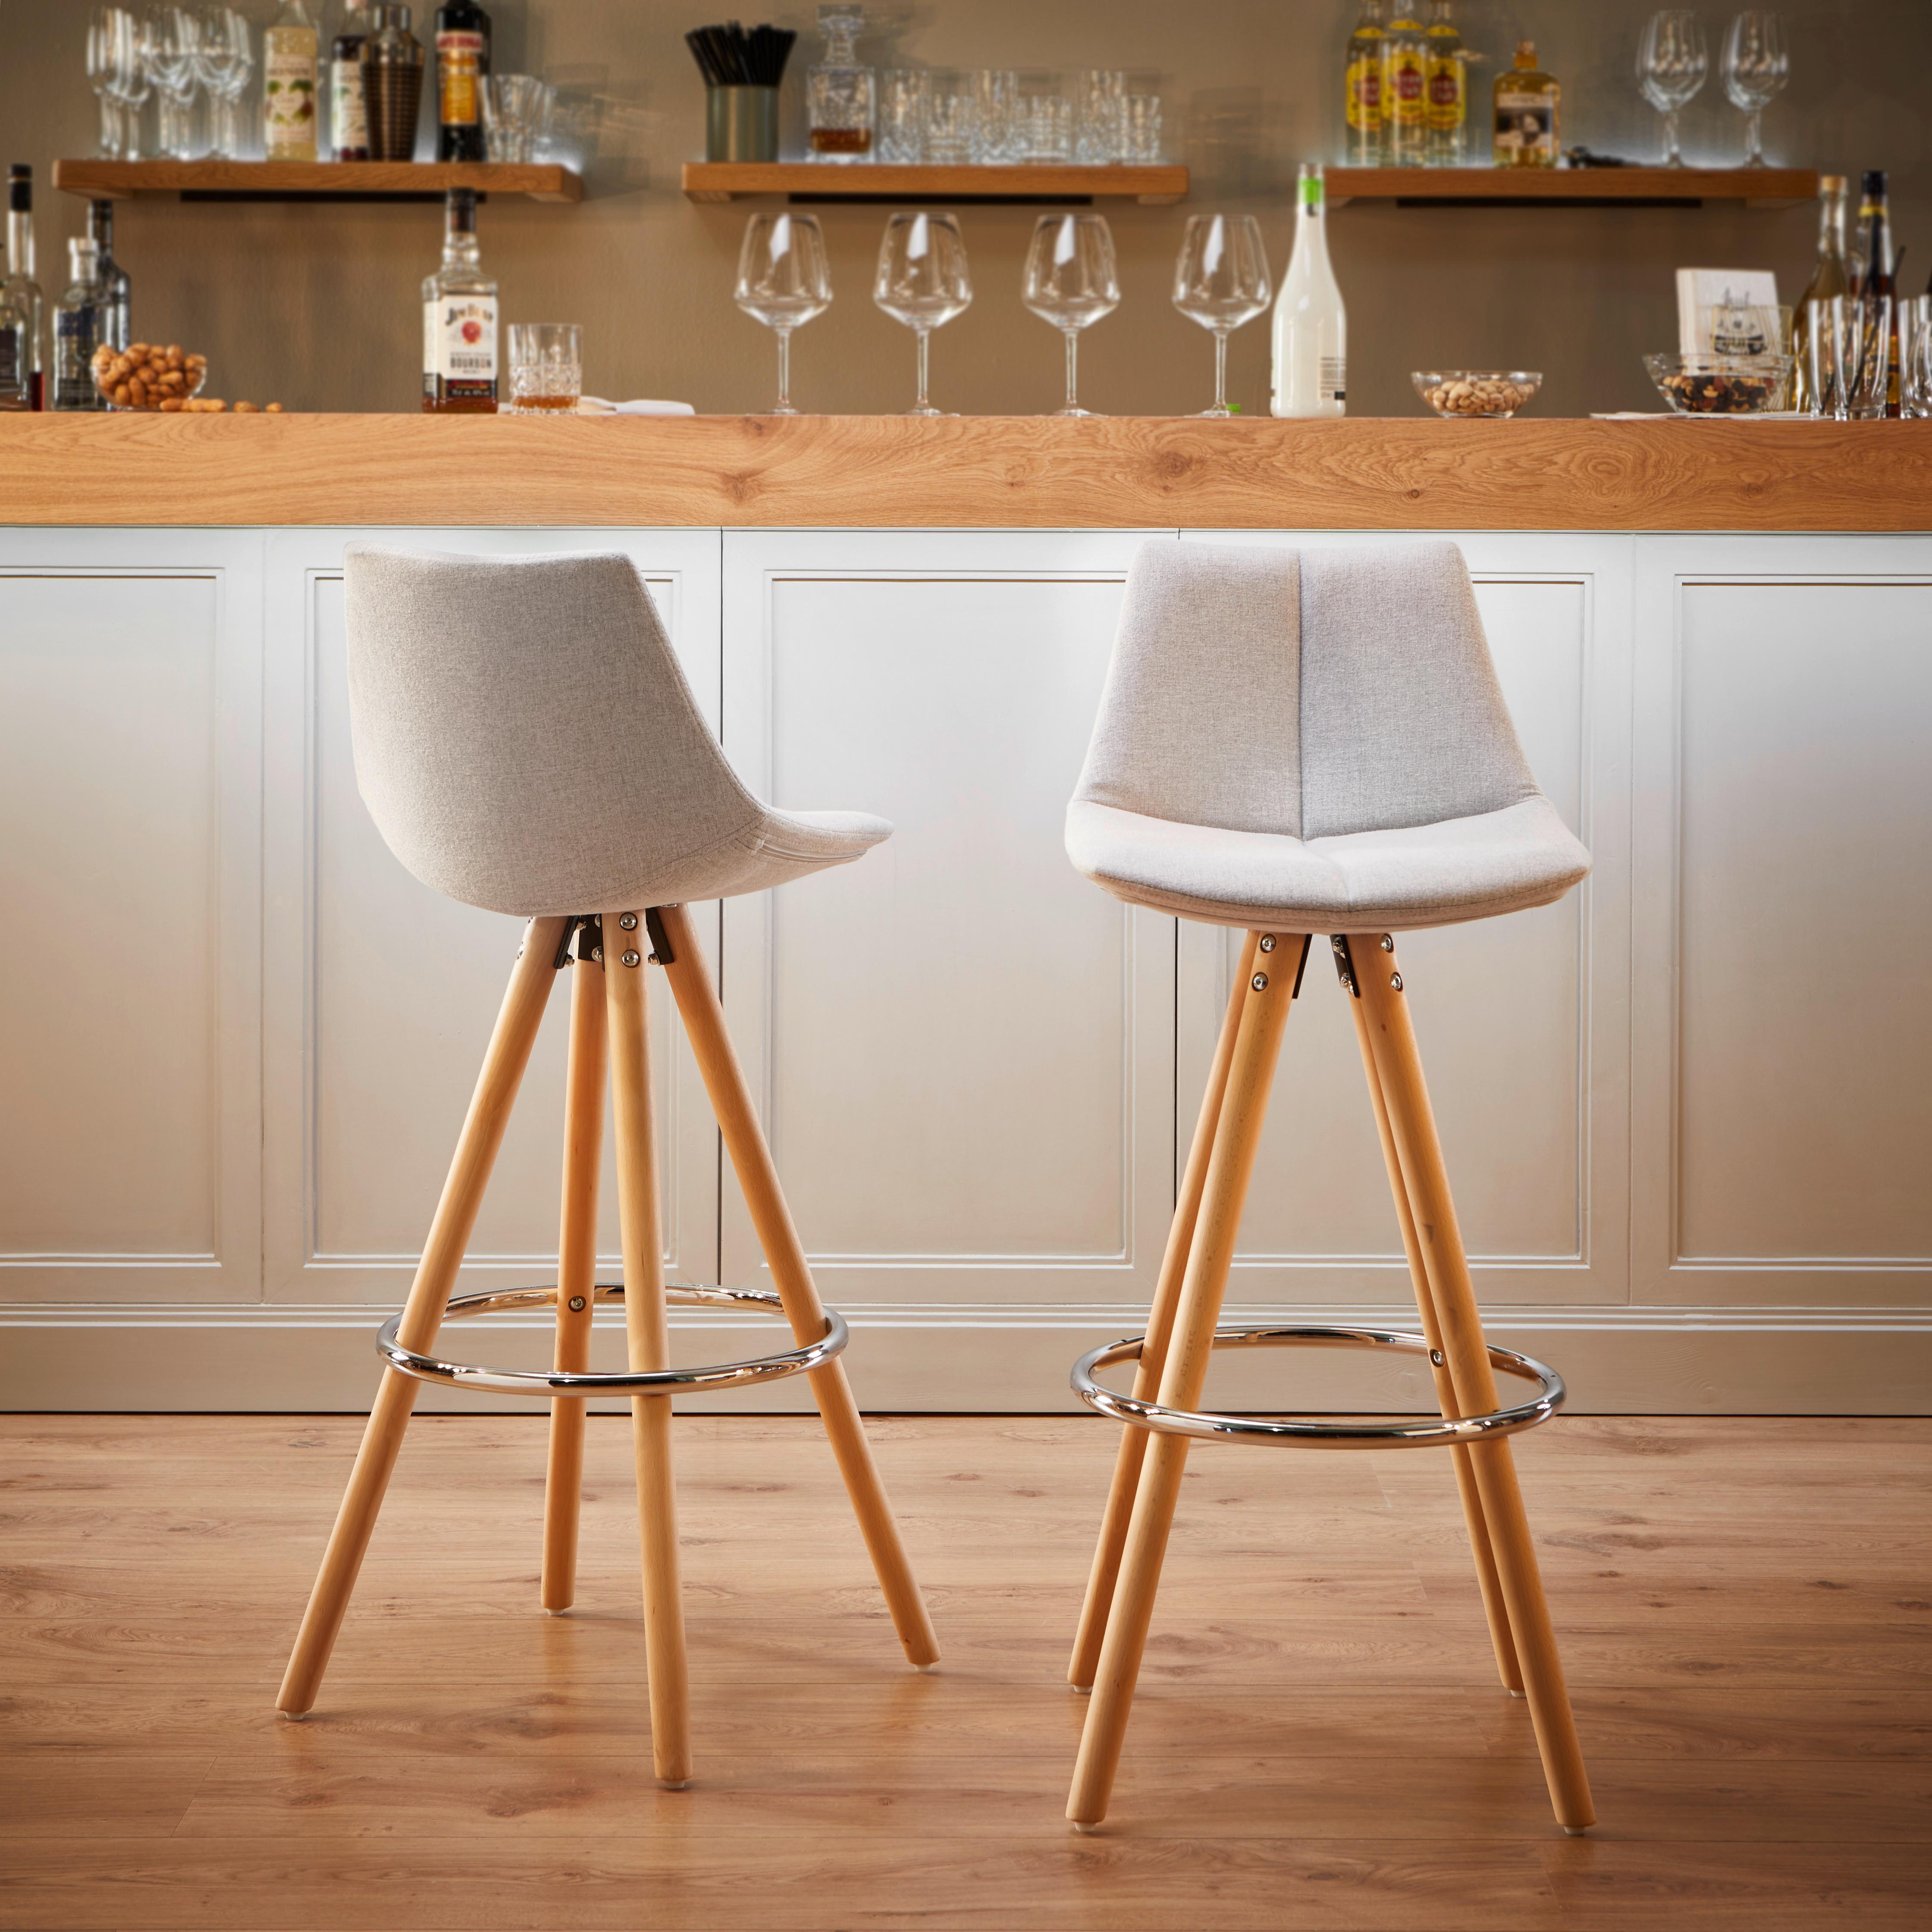 Barová Židle Nelo - světle šedá/barvy buku, Moderní, kov/dřevo (42/100/33cm) - Modern Living